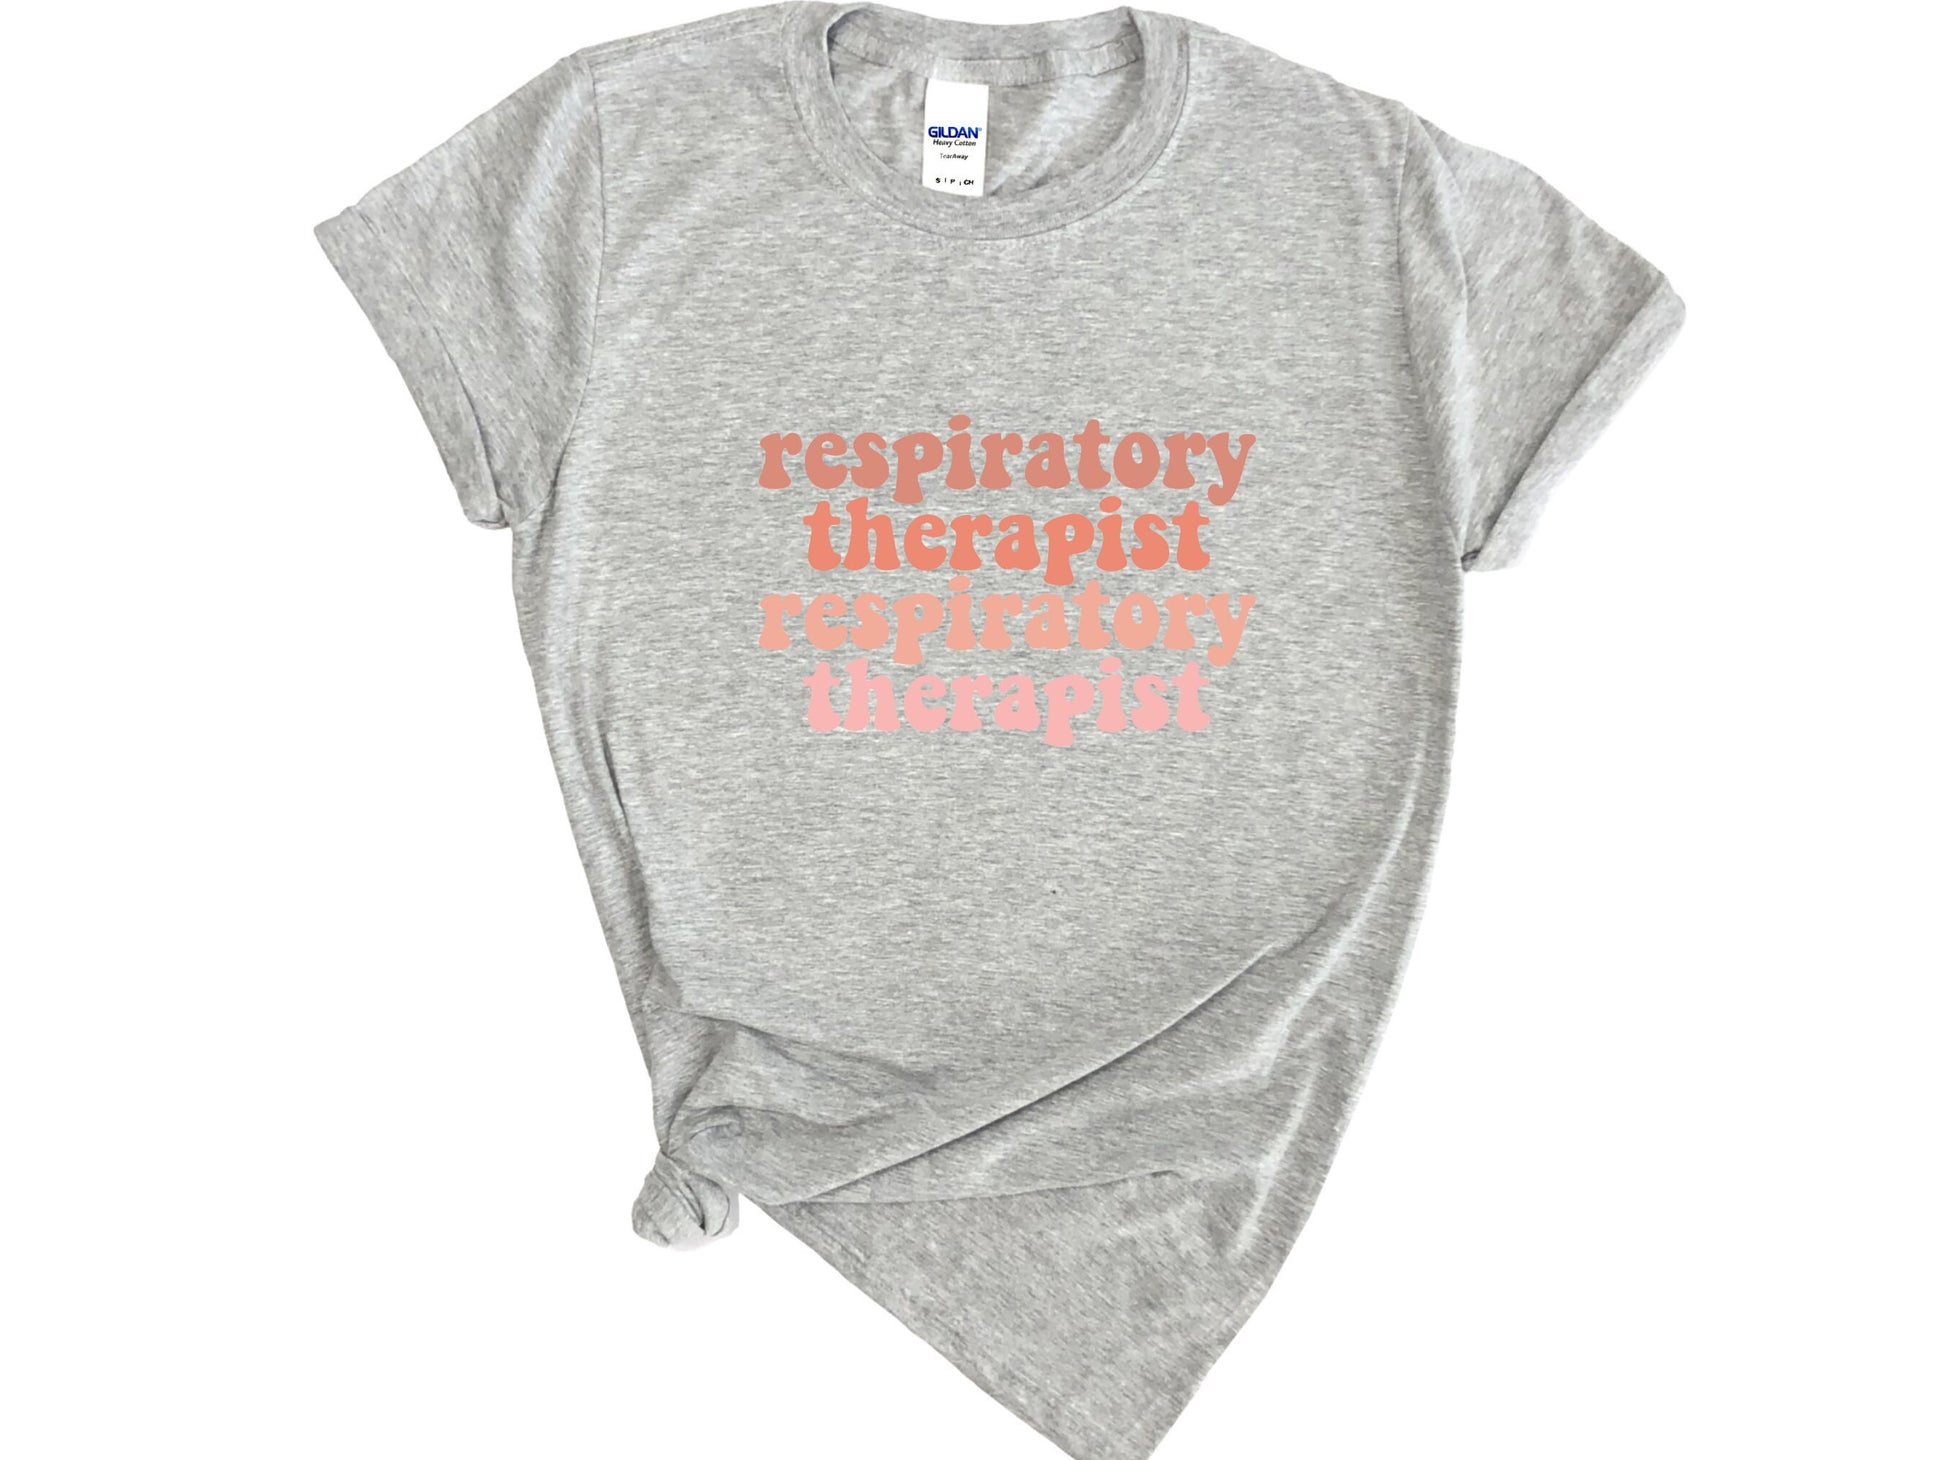 Respiratory Therapist Shirt, RT Shirt, Respiratory Week Gifts, Respiratory Sweatshirt, Gifts for Respiratory